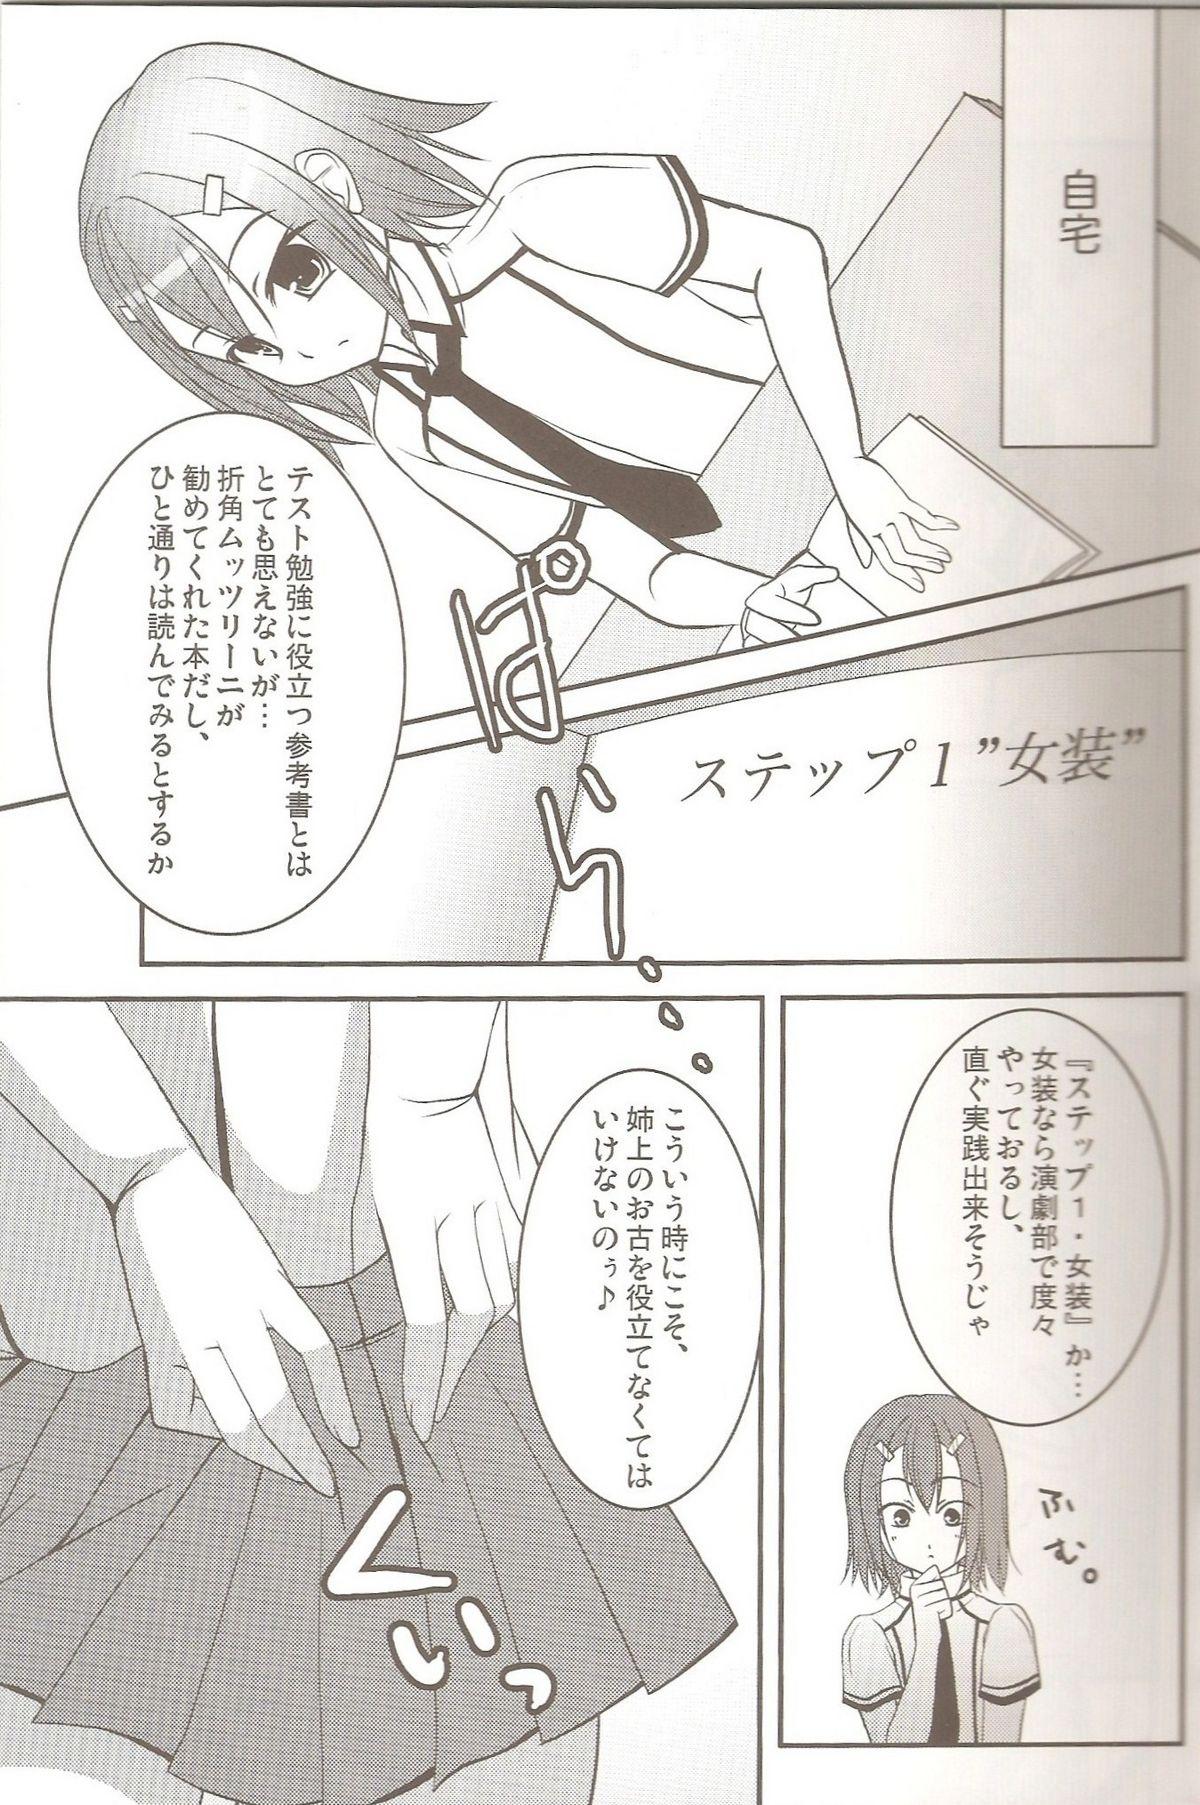 Pissing Hideyoshi no Hokentaiiku - Baka to test to shoukanjuu Yanks Featured - Page 6